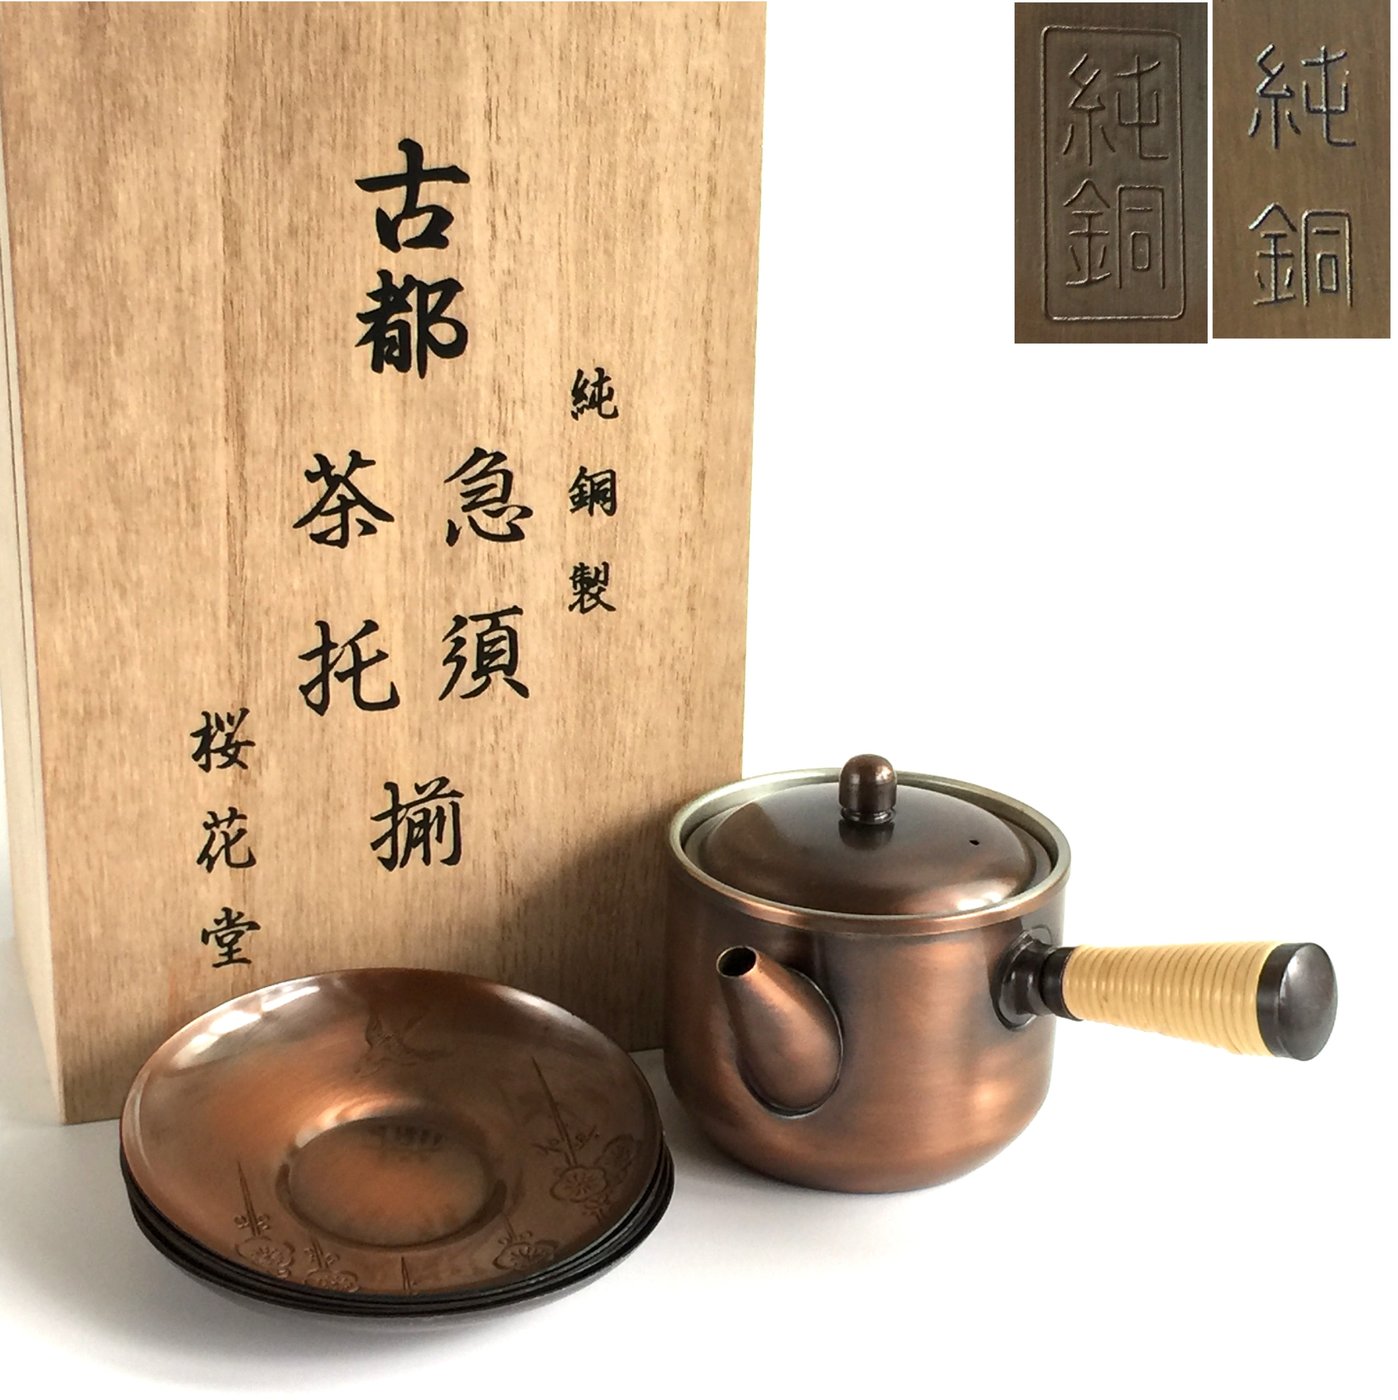 【松果坊】日本金工『櫻花堂』造純銅製急須茶壺茶托五客共箱未 